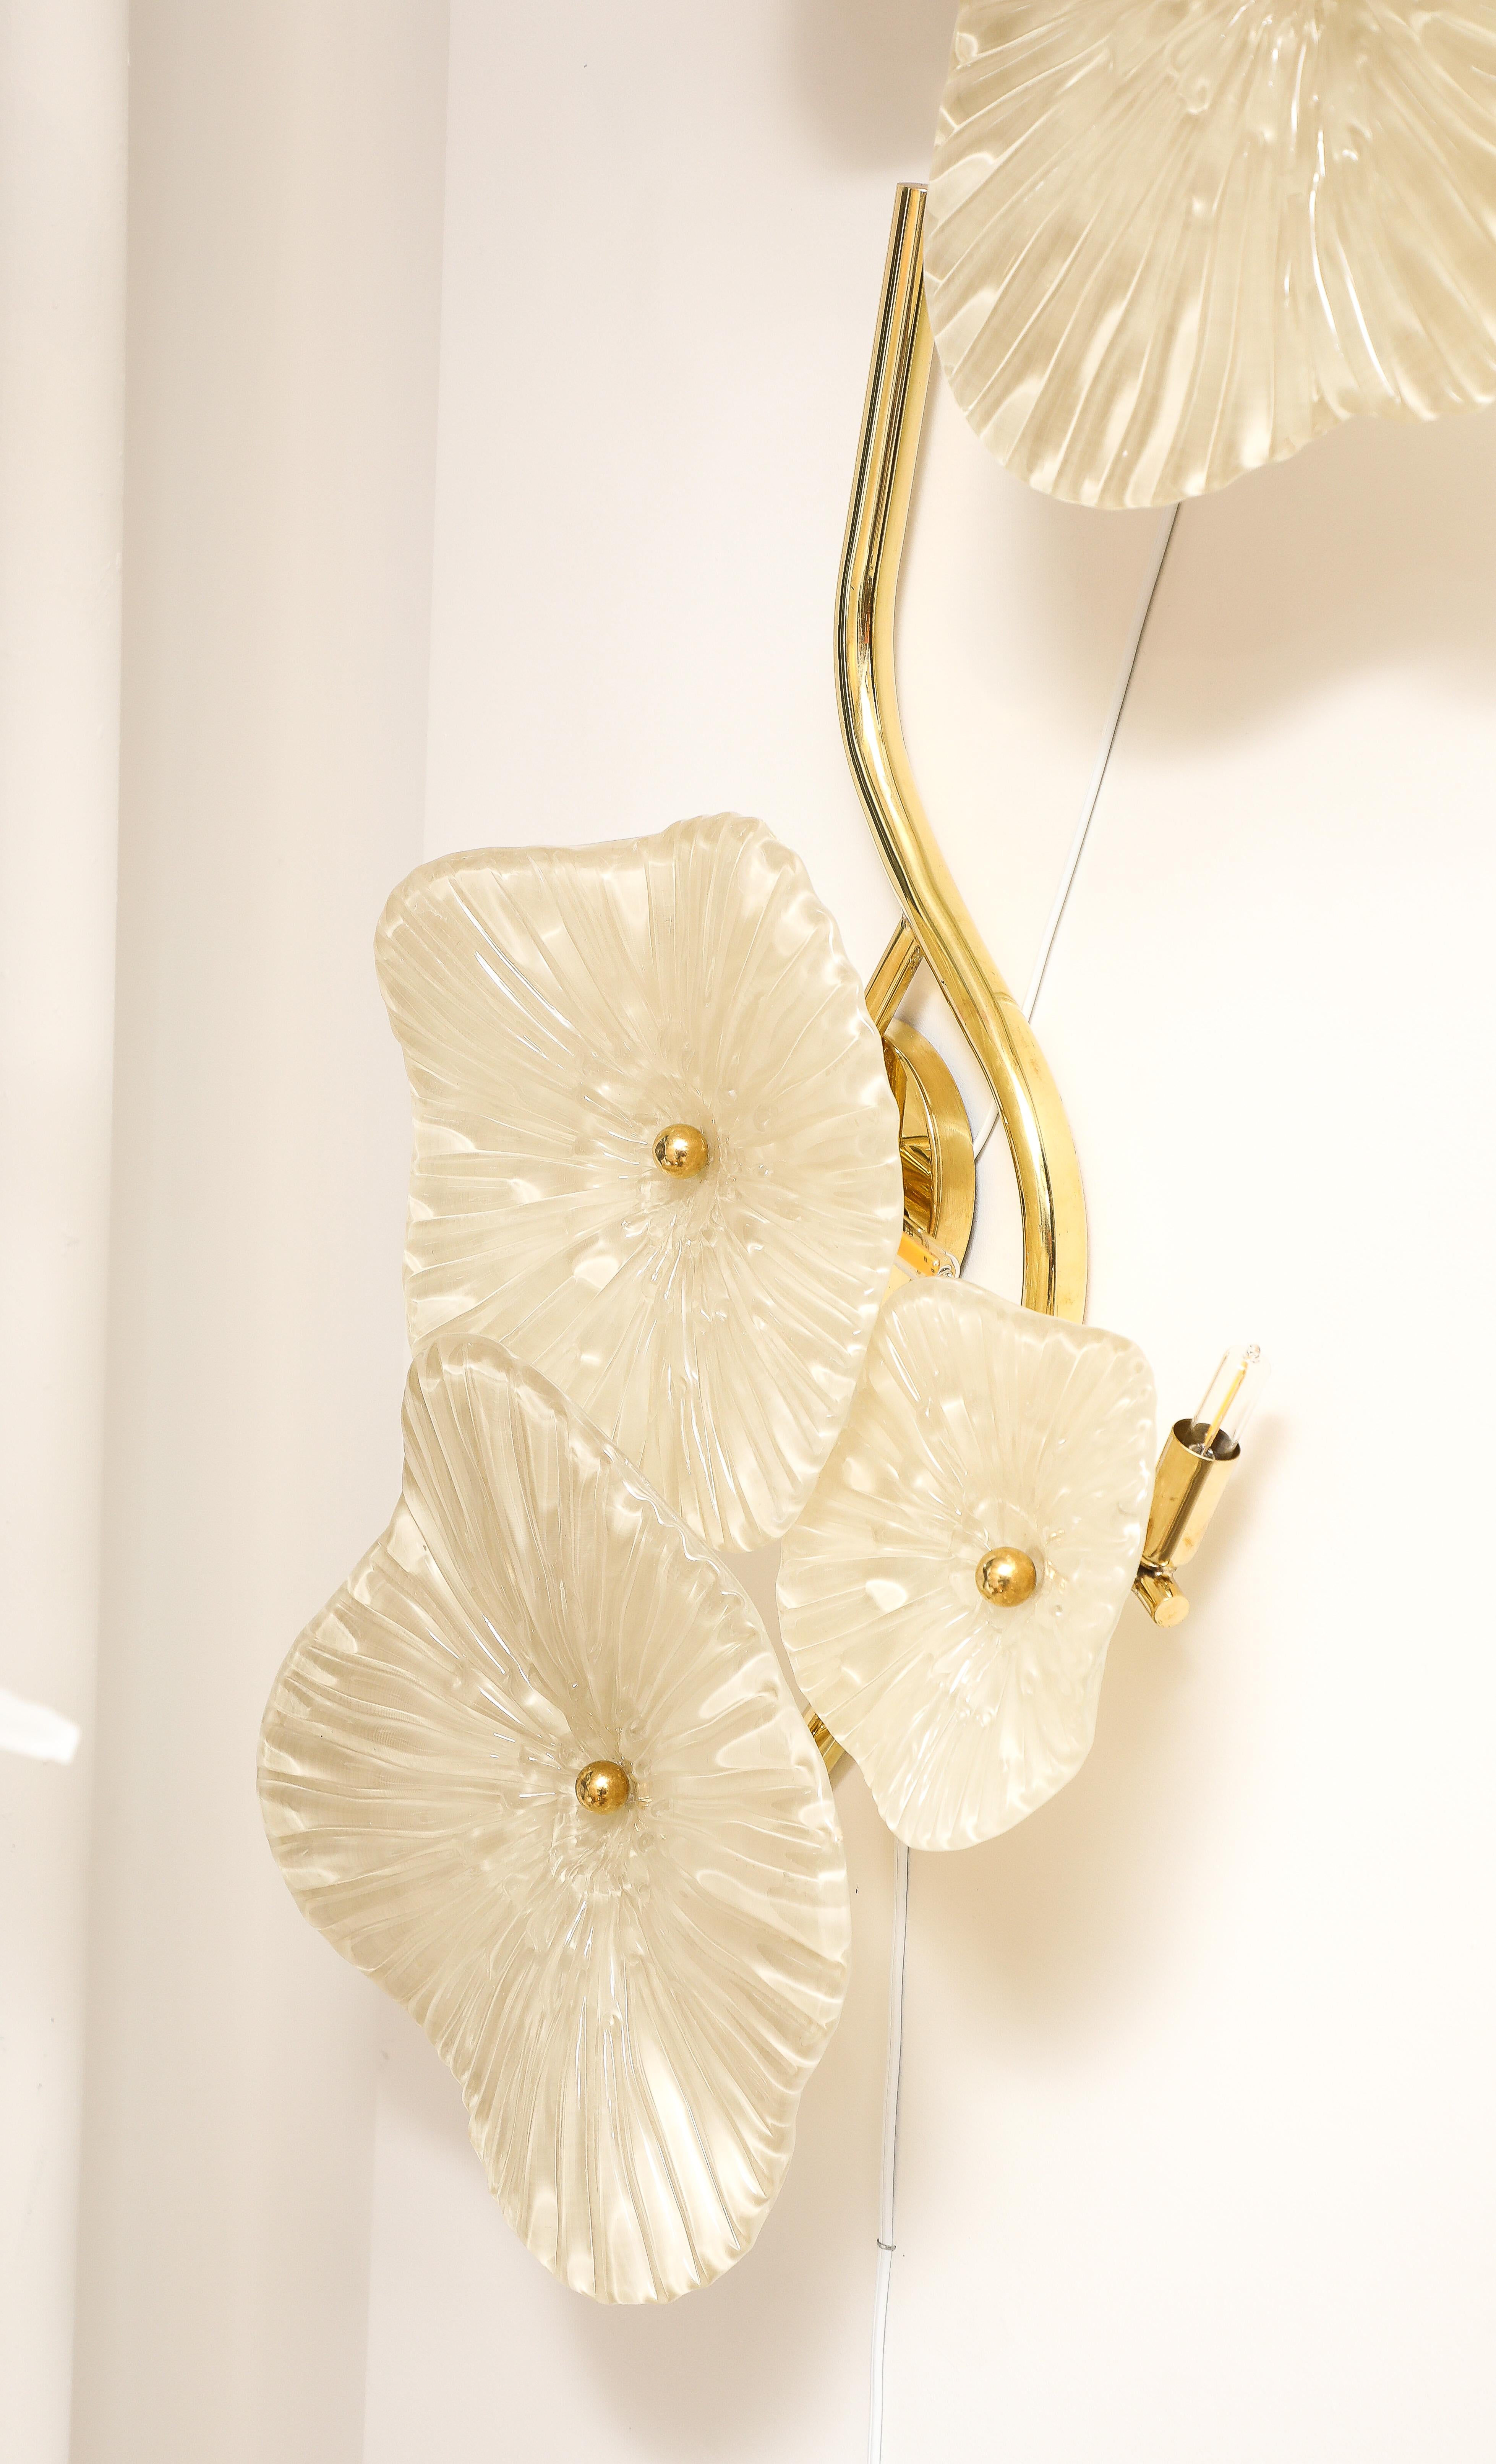 Paar von weichen Elfenbein Murano Glas Blume Wandleuchte oder Wandkunst mit Messingrahmen. Handgegossene und geformte Blumen aus Murano-Glas in zartem Elfenbein sind mit einer Messingkappe an Messingstielen befestigt. Die Murano-Glasblumen variieren